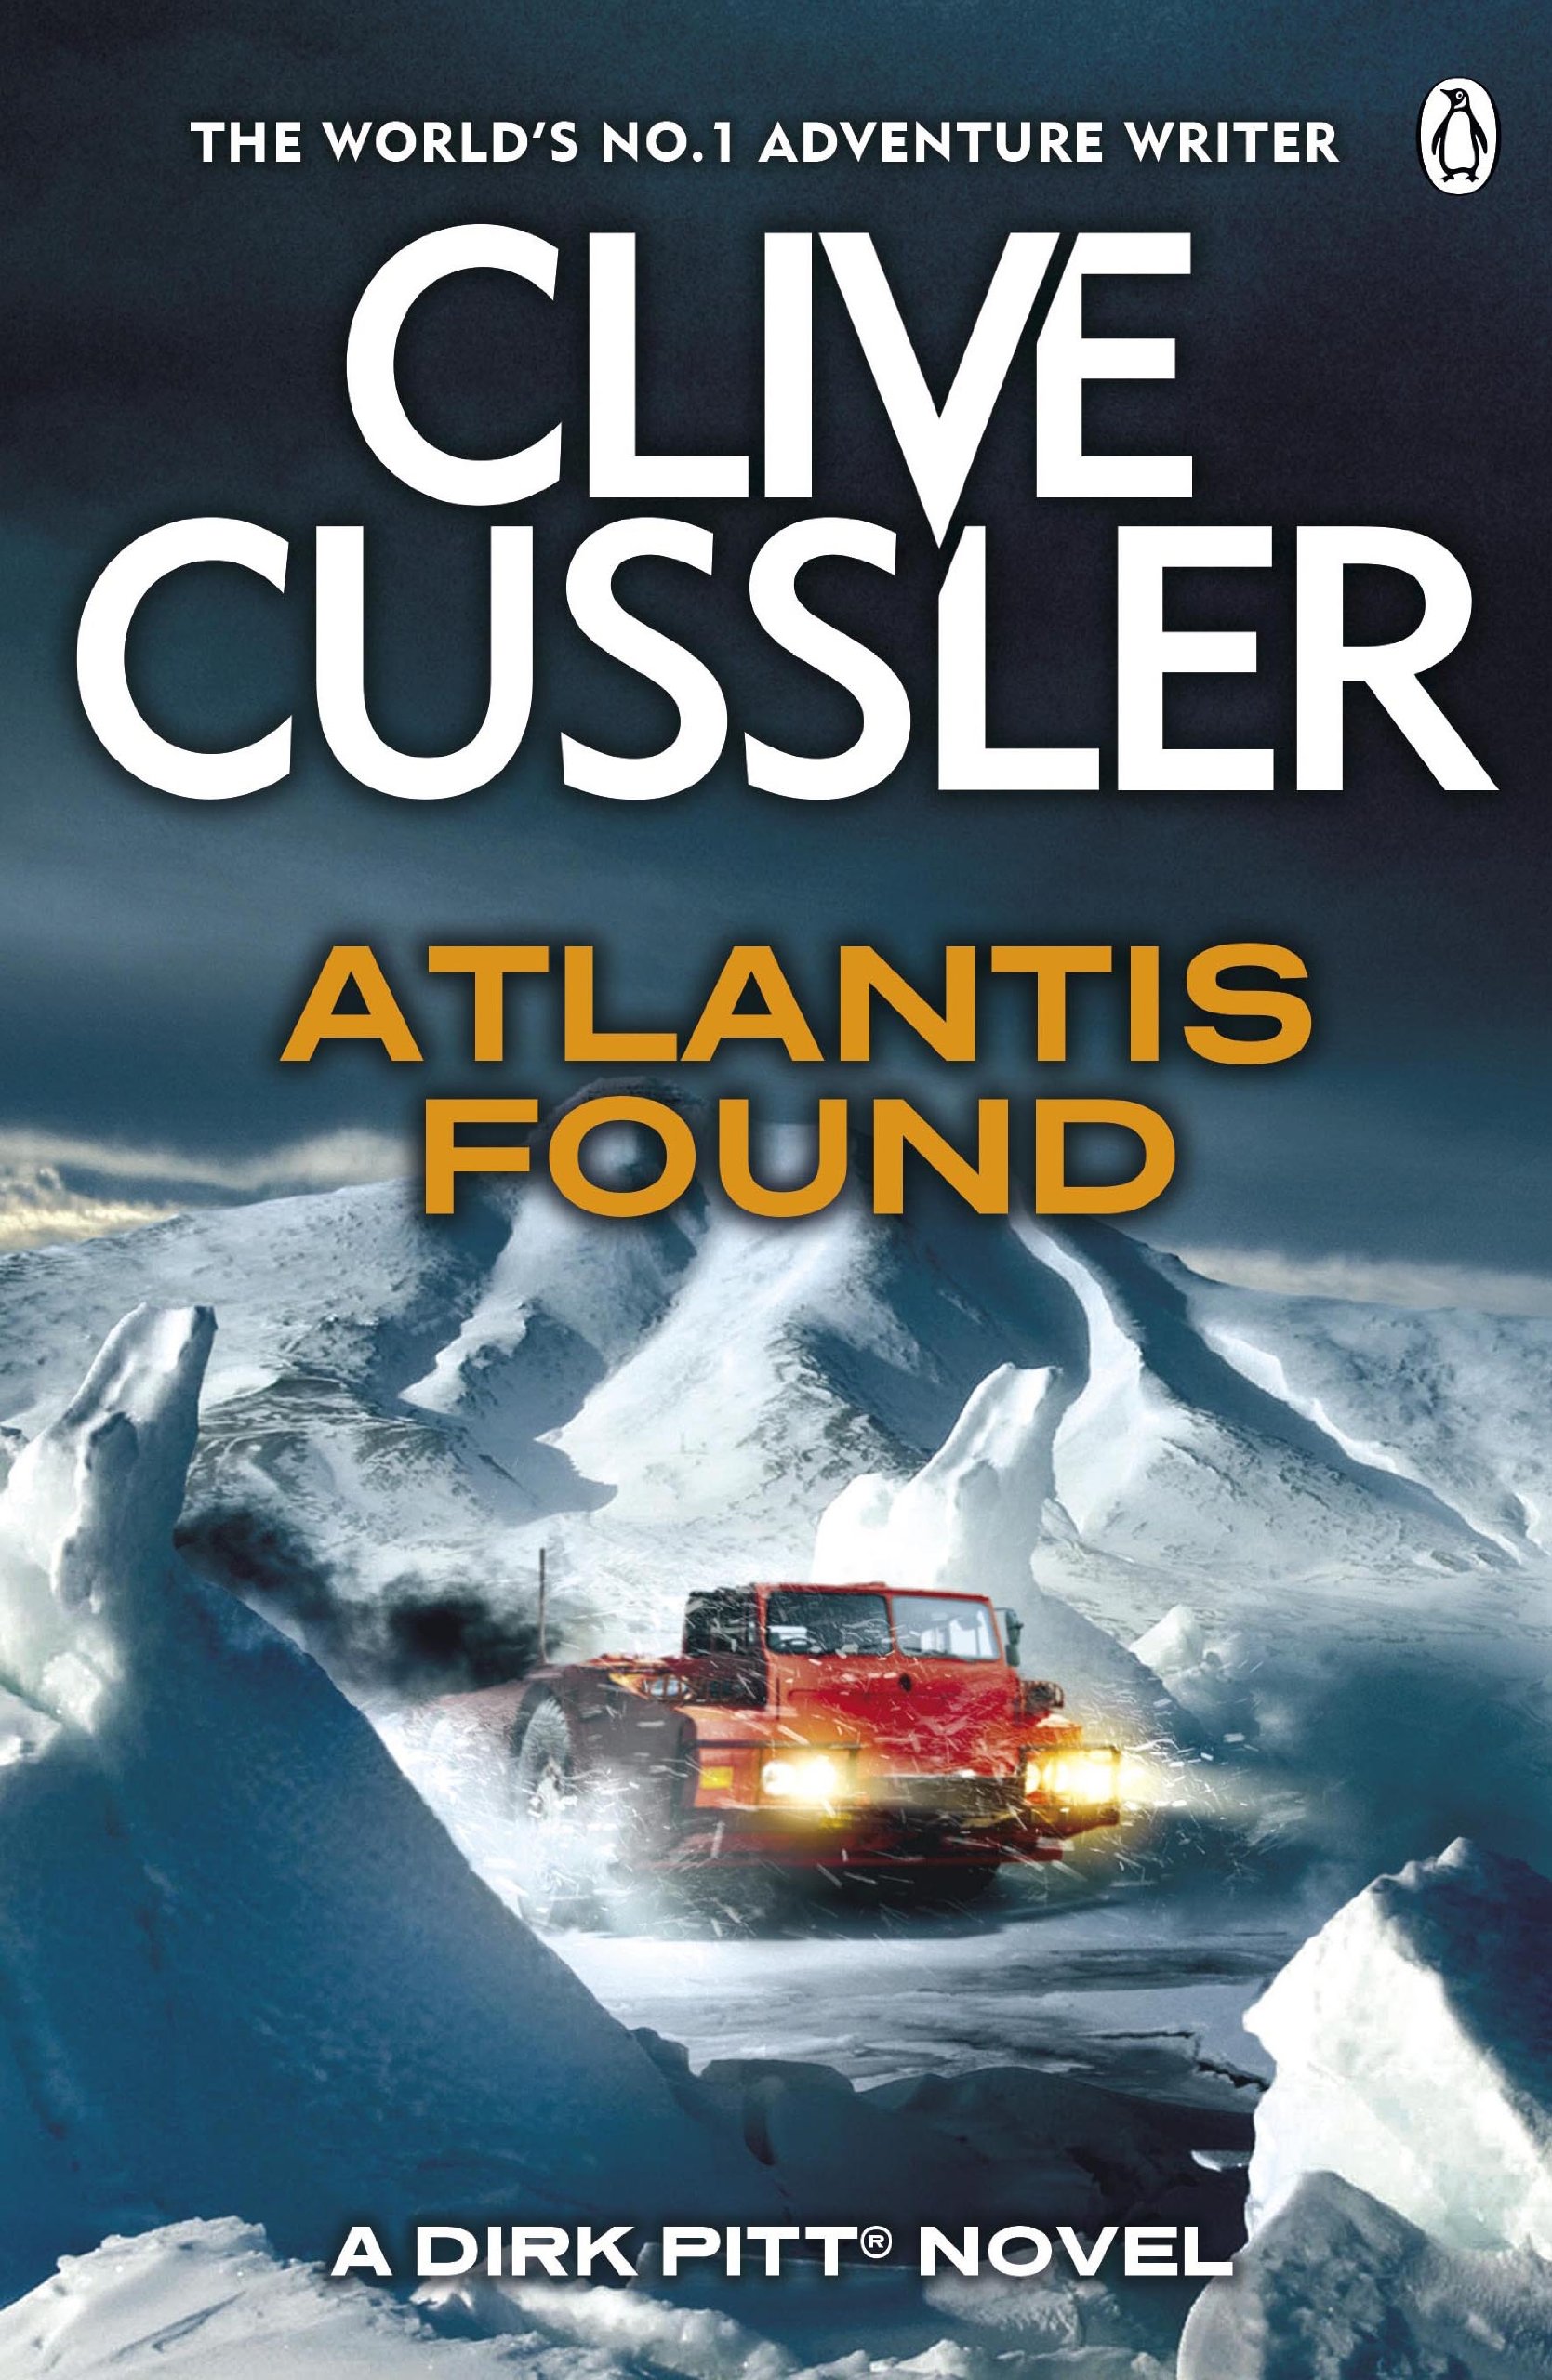 Book Cover of Atlantis Found